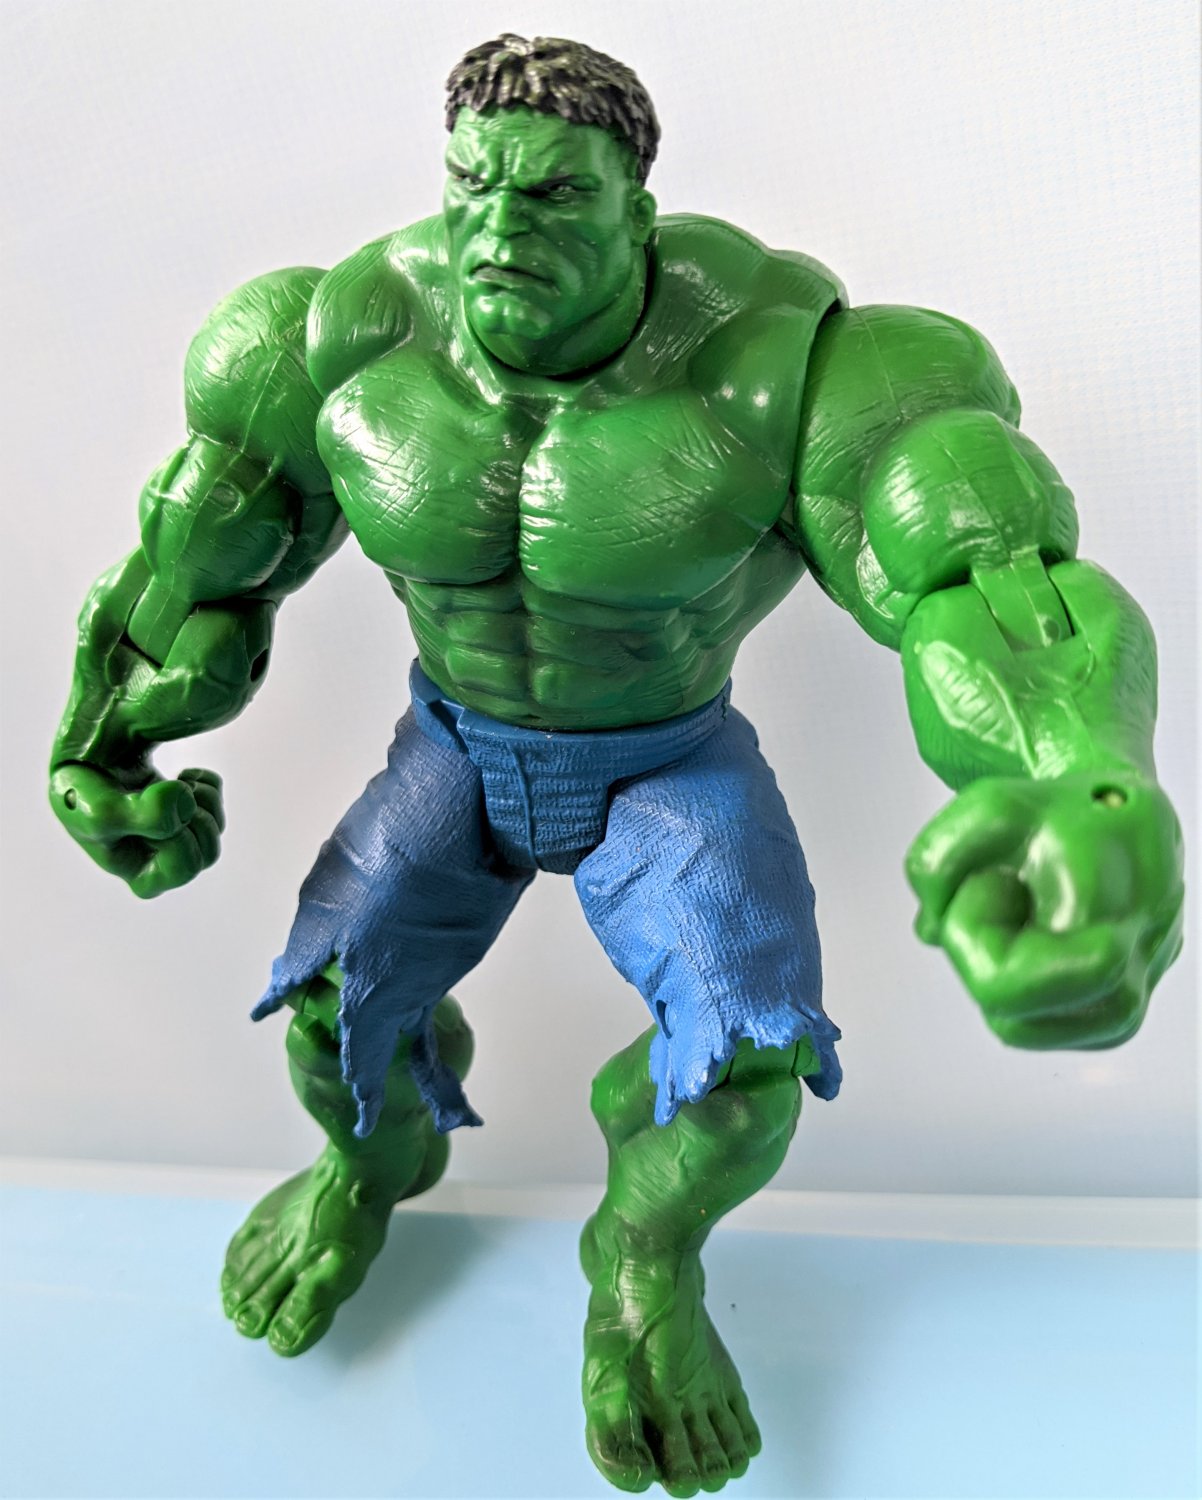 Marvel Punching Hulk Action Figure 2003